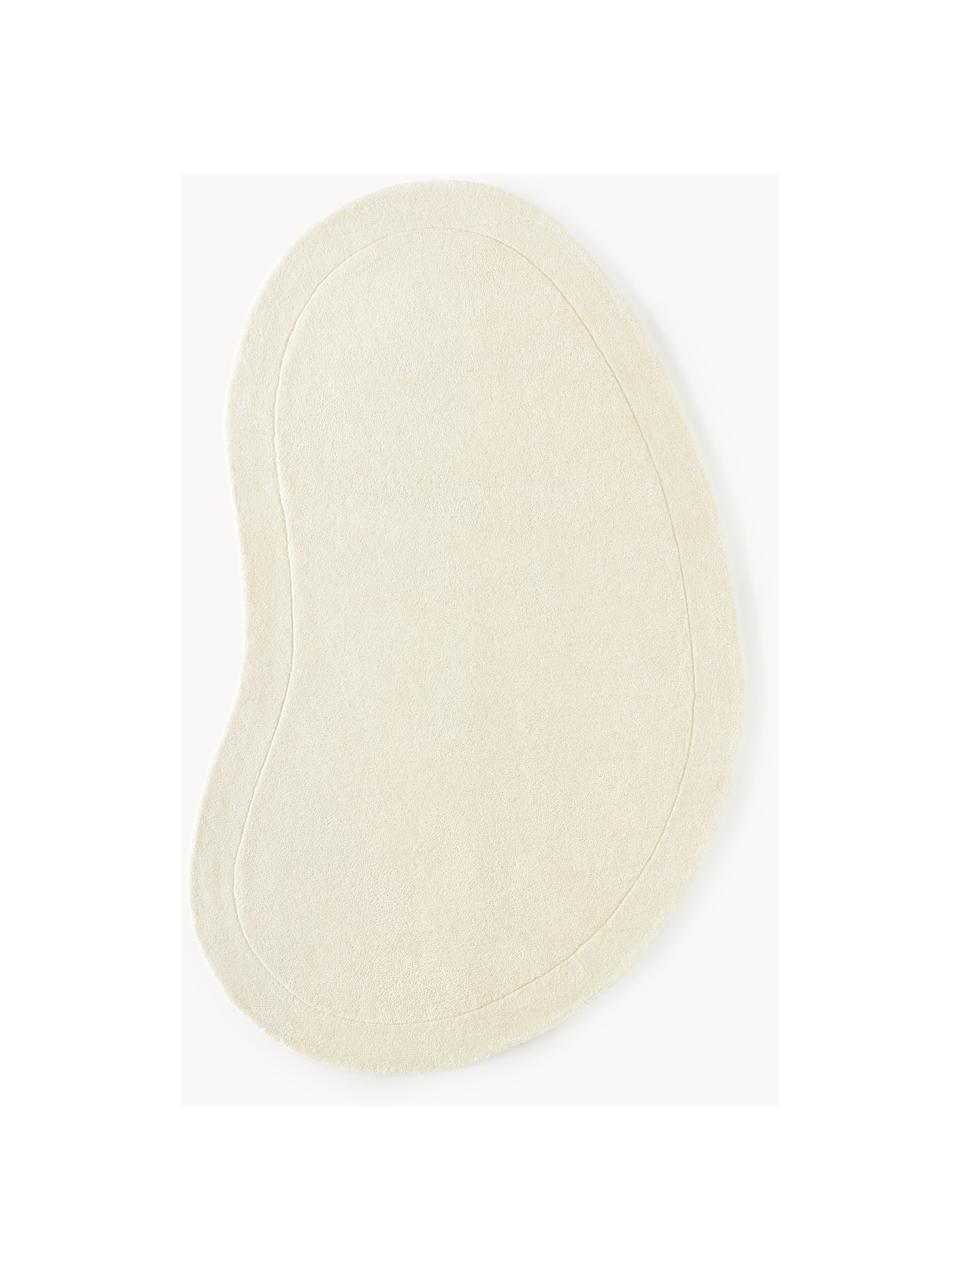 Ručně všívaný vlněný koberec v organickém tvaru Kadey, Krémově bílá, Š 120 cm, D 180 cm (velikost S)